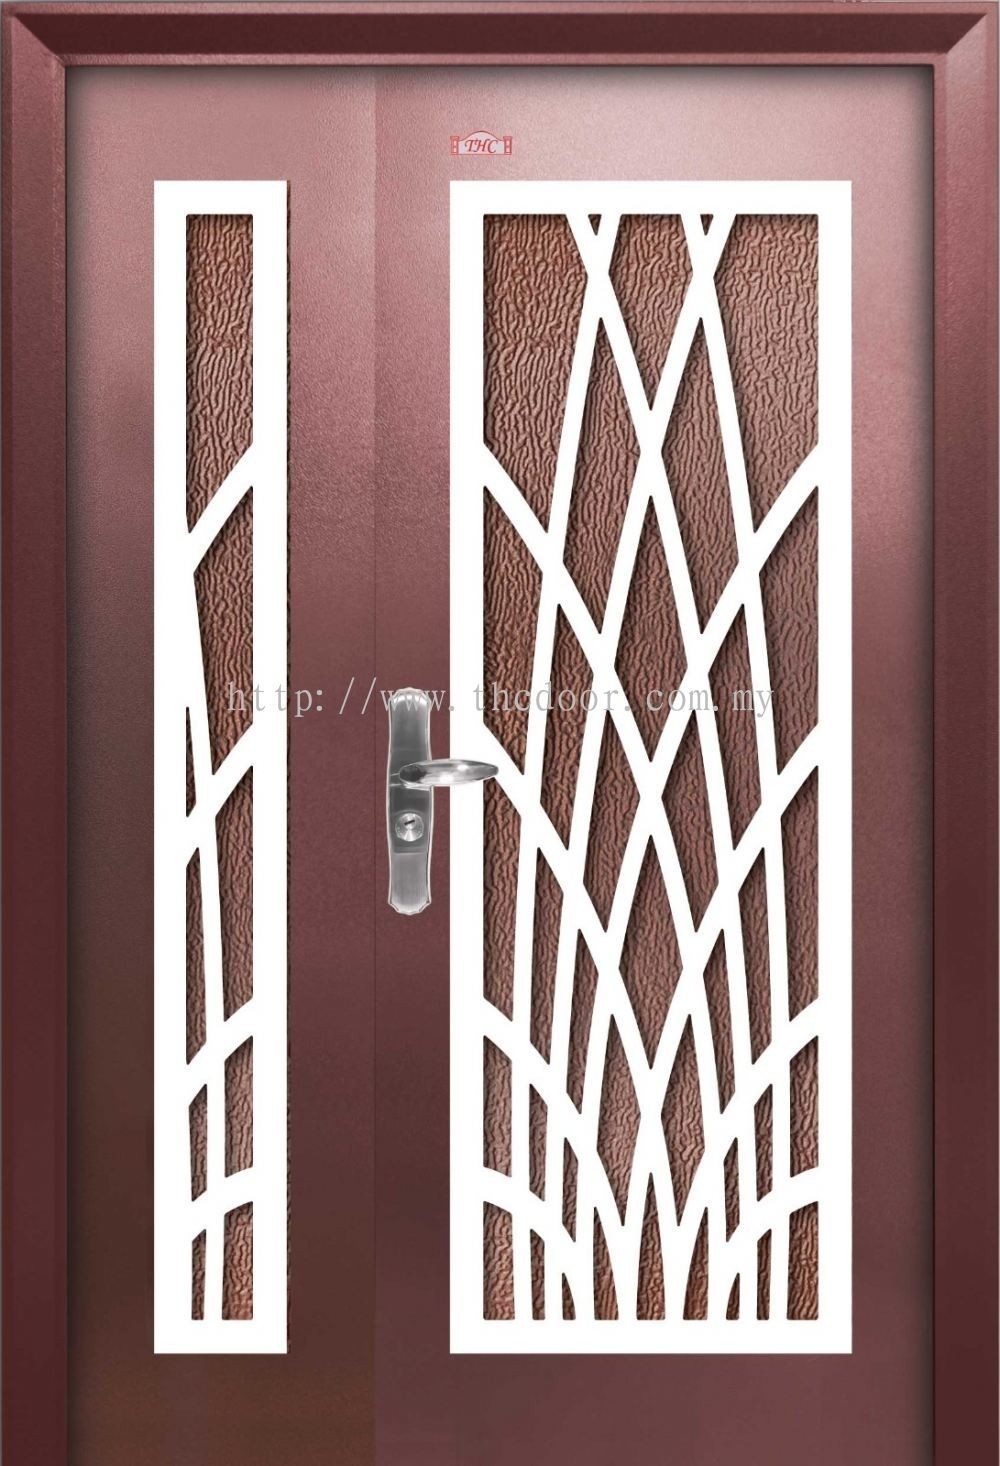 Pintu Keselamatan : P4-W986     Pintu Keselamatan Besar Kecil 5ft X 7ft Pintu Keselamatan Carta Pilihan Warna Corak